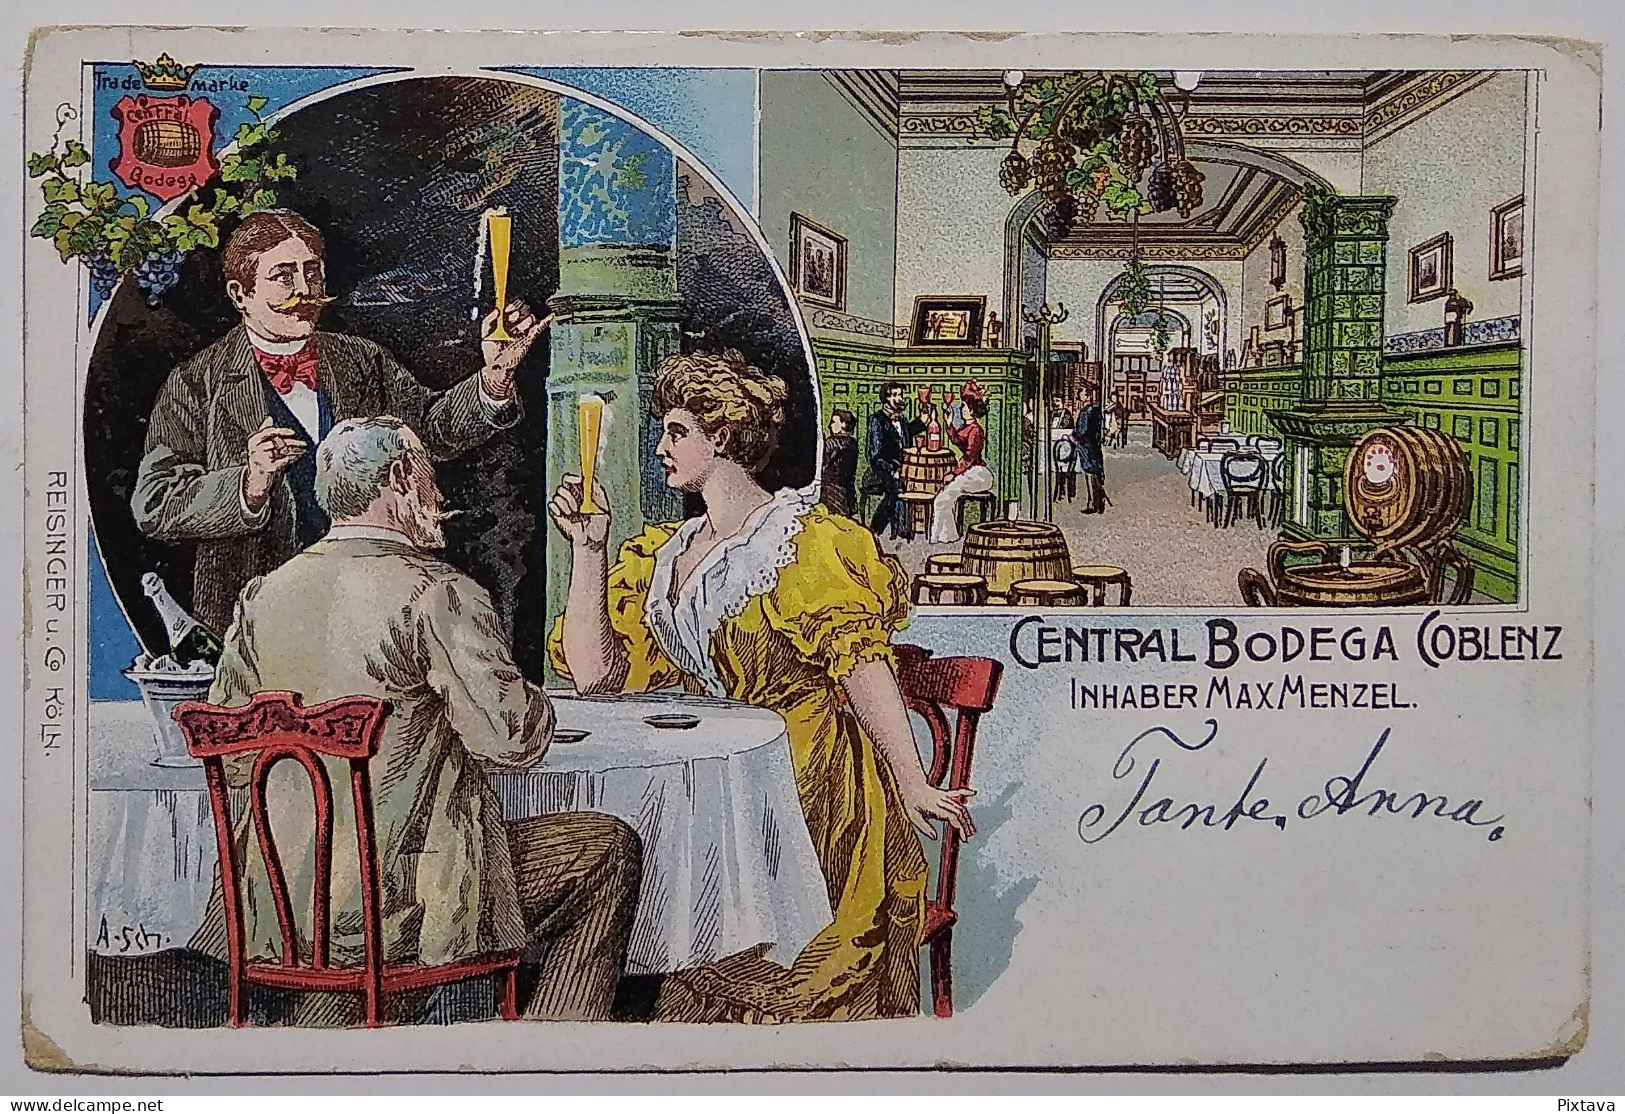 Germany / Central Bodega Coblenz / Inhaber Max Menzel / 1905 / Restaurant / Litho - Zu Identifizieren